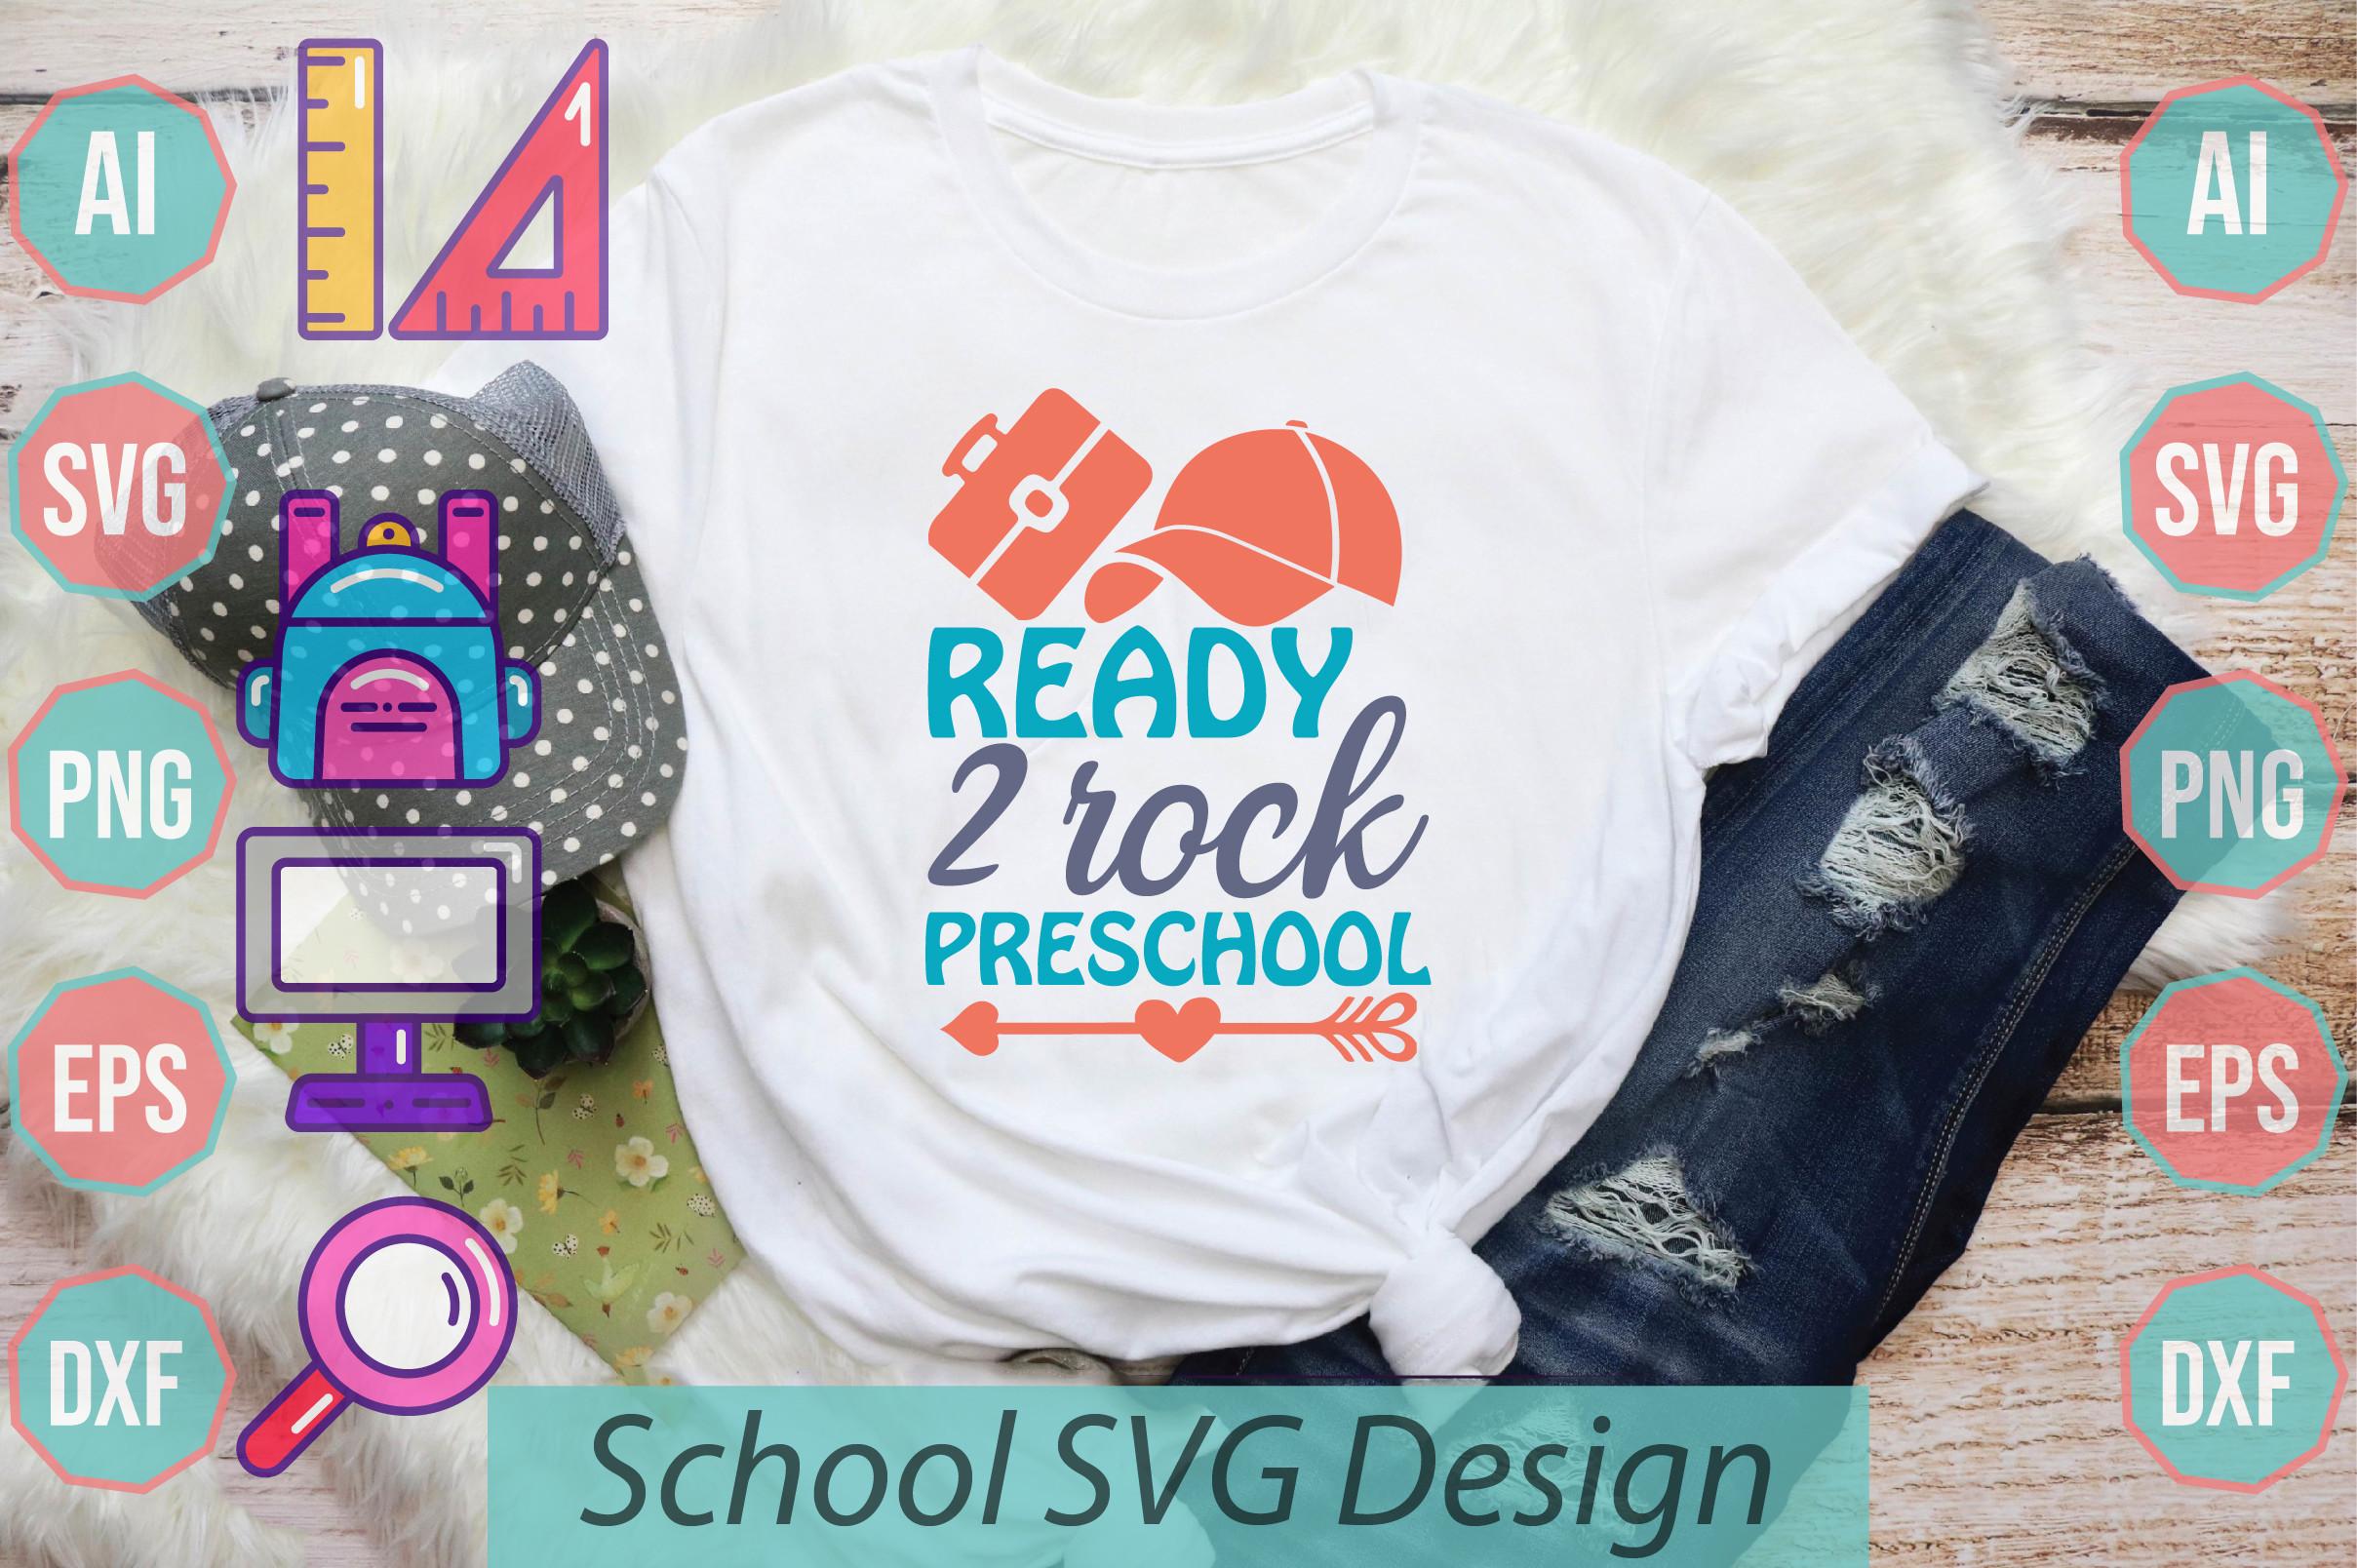 Ready 2 Rock Preschool